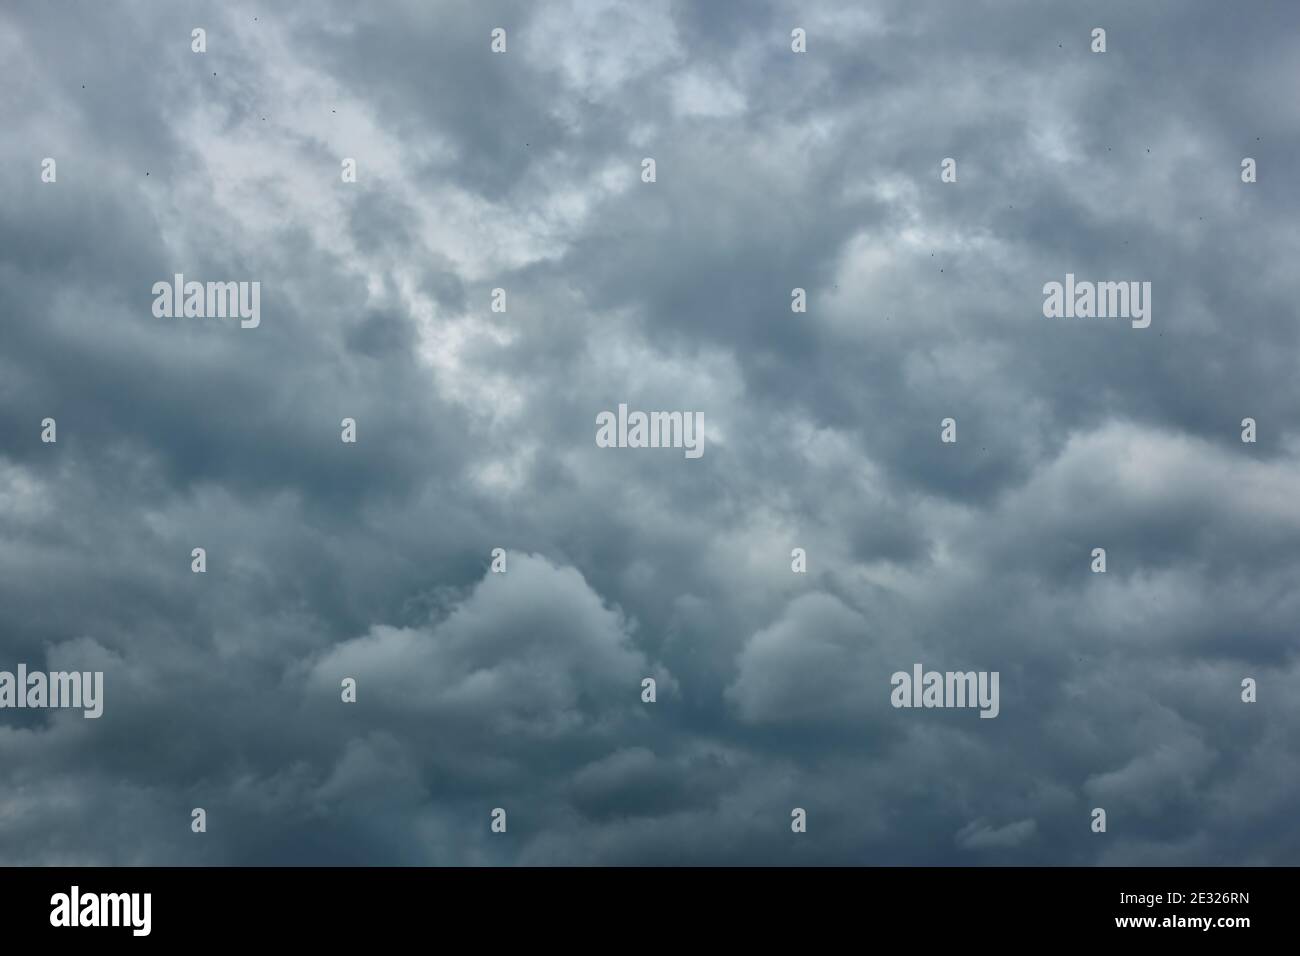 Bedeckt - Grau havy regen Wolken, kann als Hintergrund verwendet werden Stockfoto